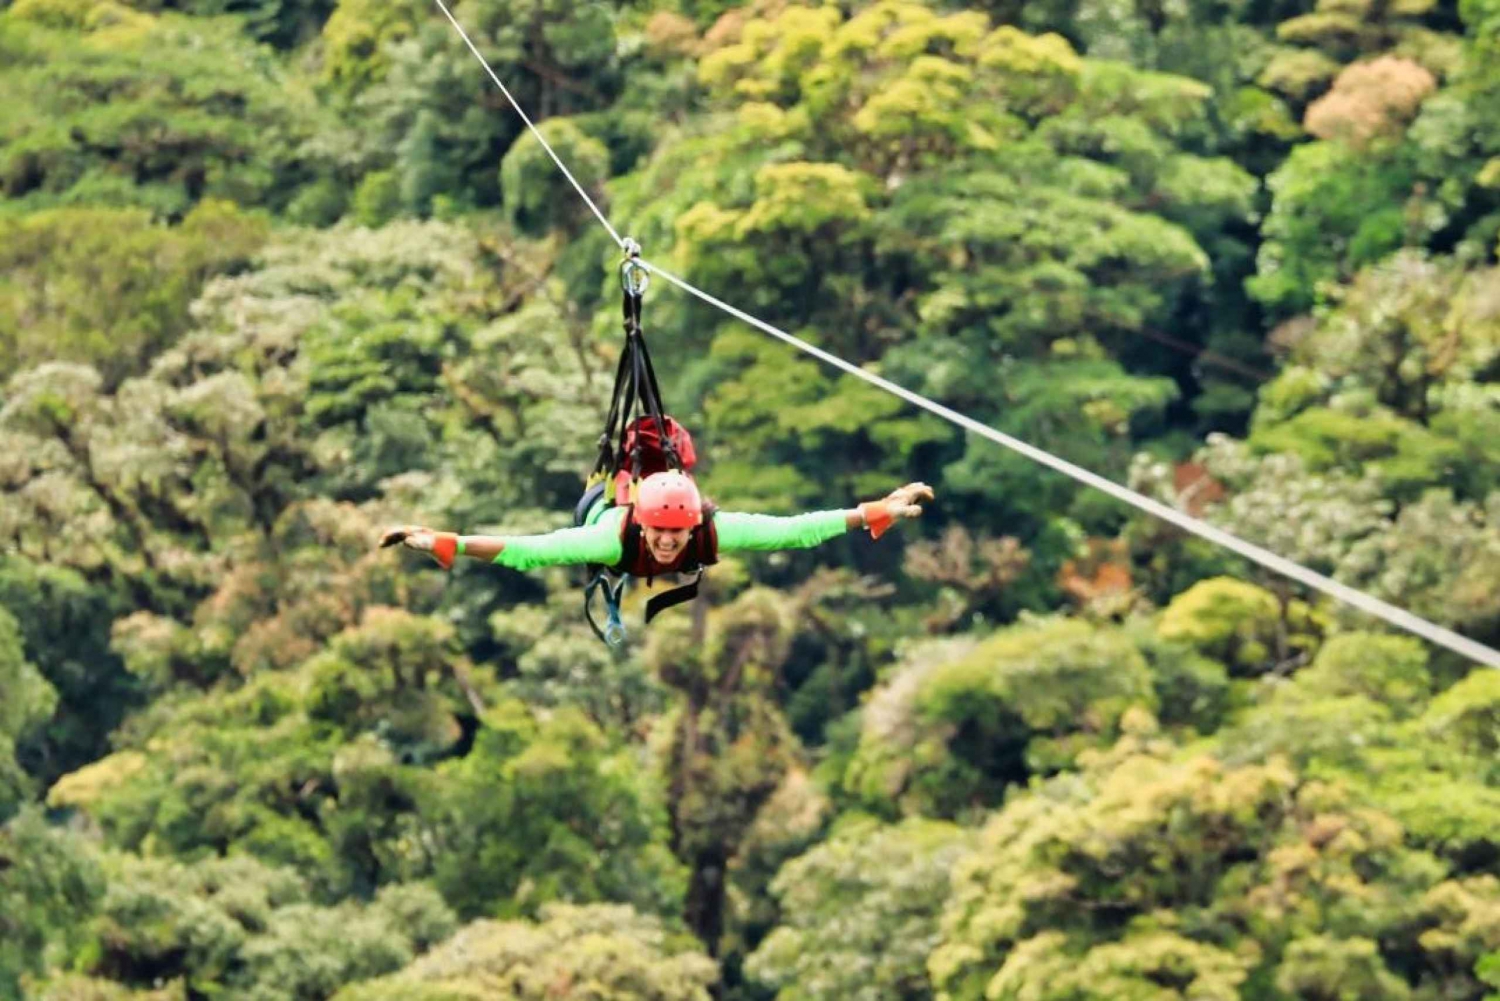 Monteverde : Tyrolienne, ponts et jardin de papillons